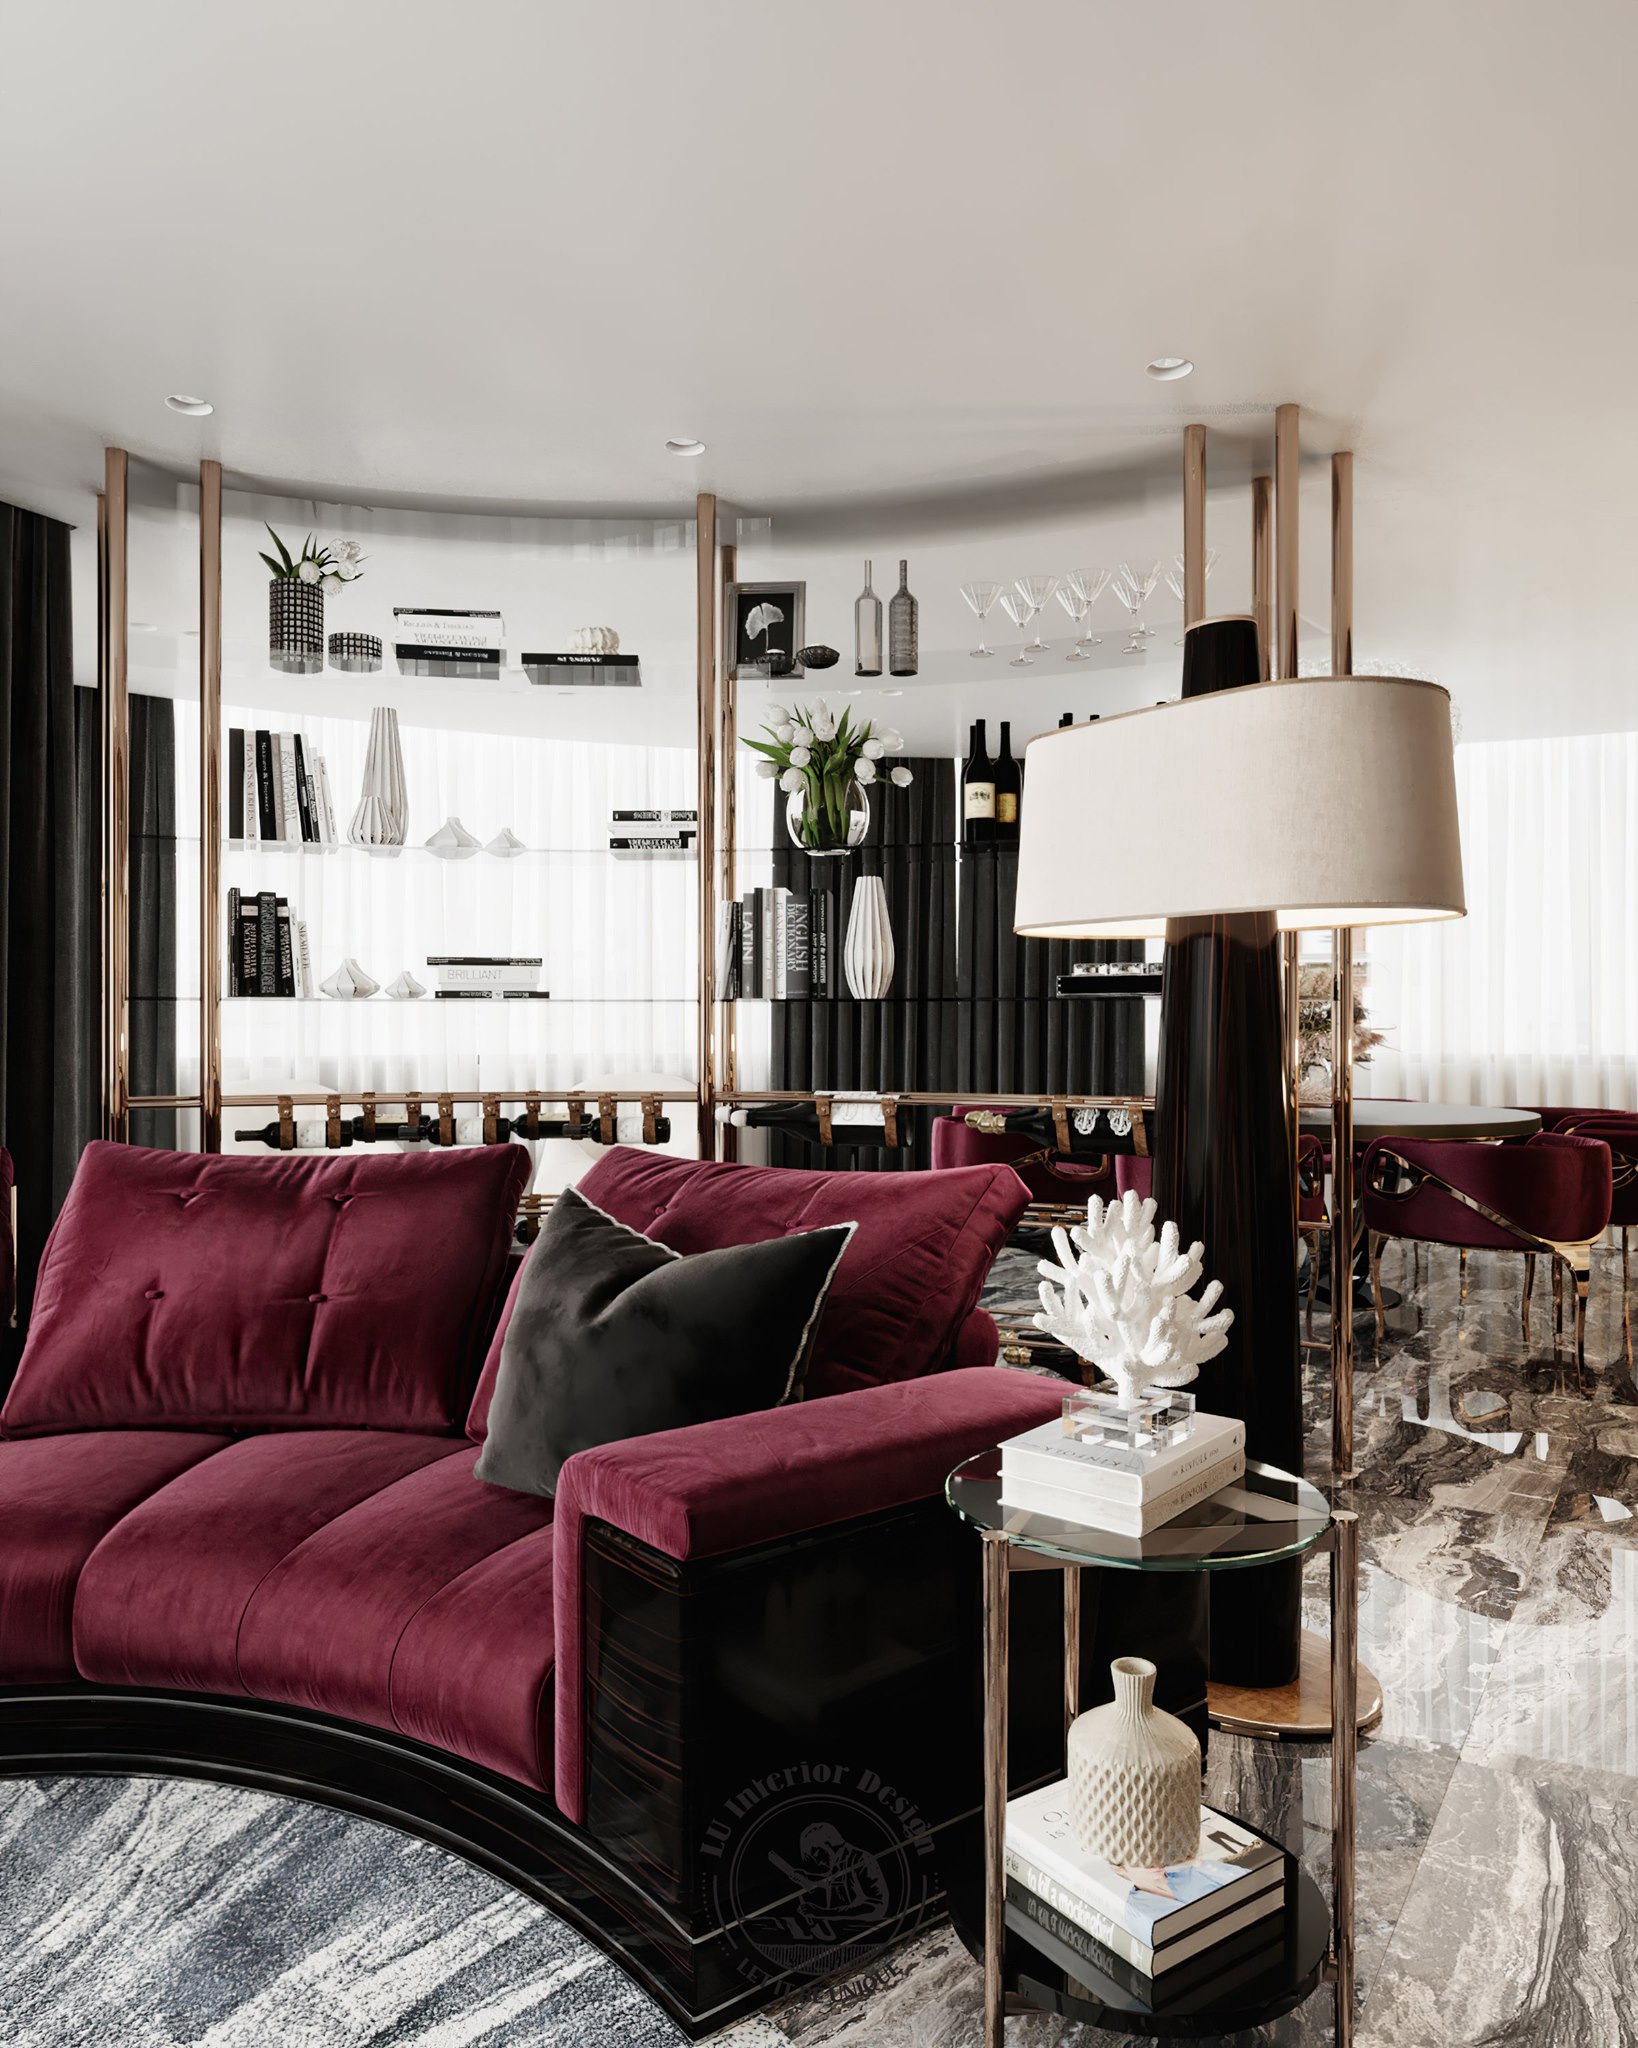 Bộ sofa đẹp mang lại cảm giác thư thái cho người sử dụng | Dự án Penthouse Vũng Tàu - LU Design thực hiện.